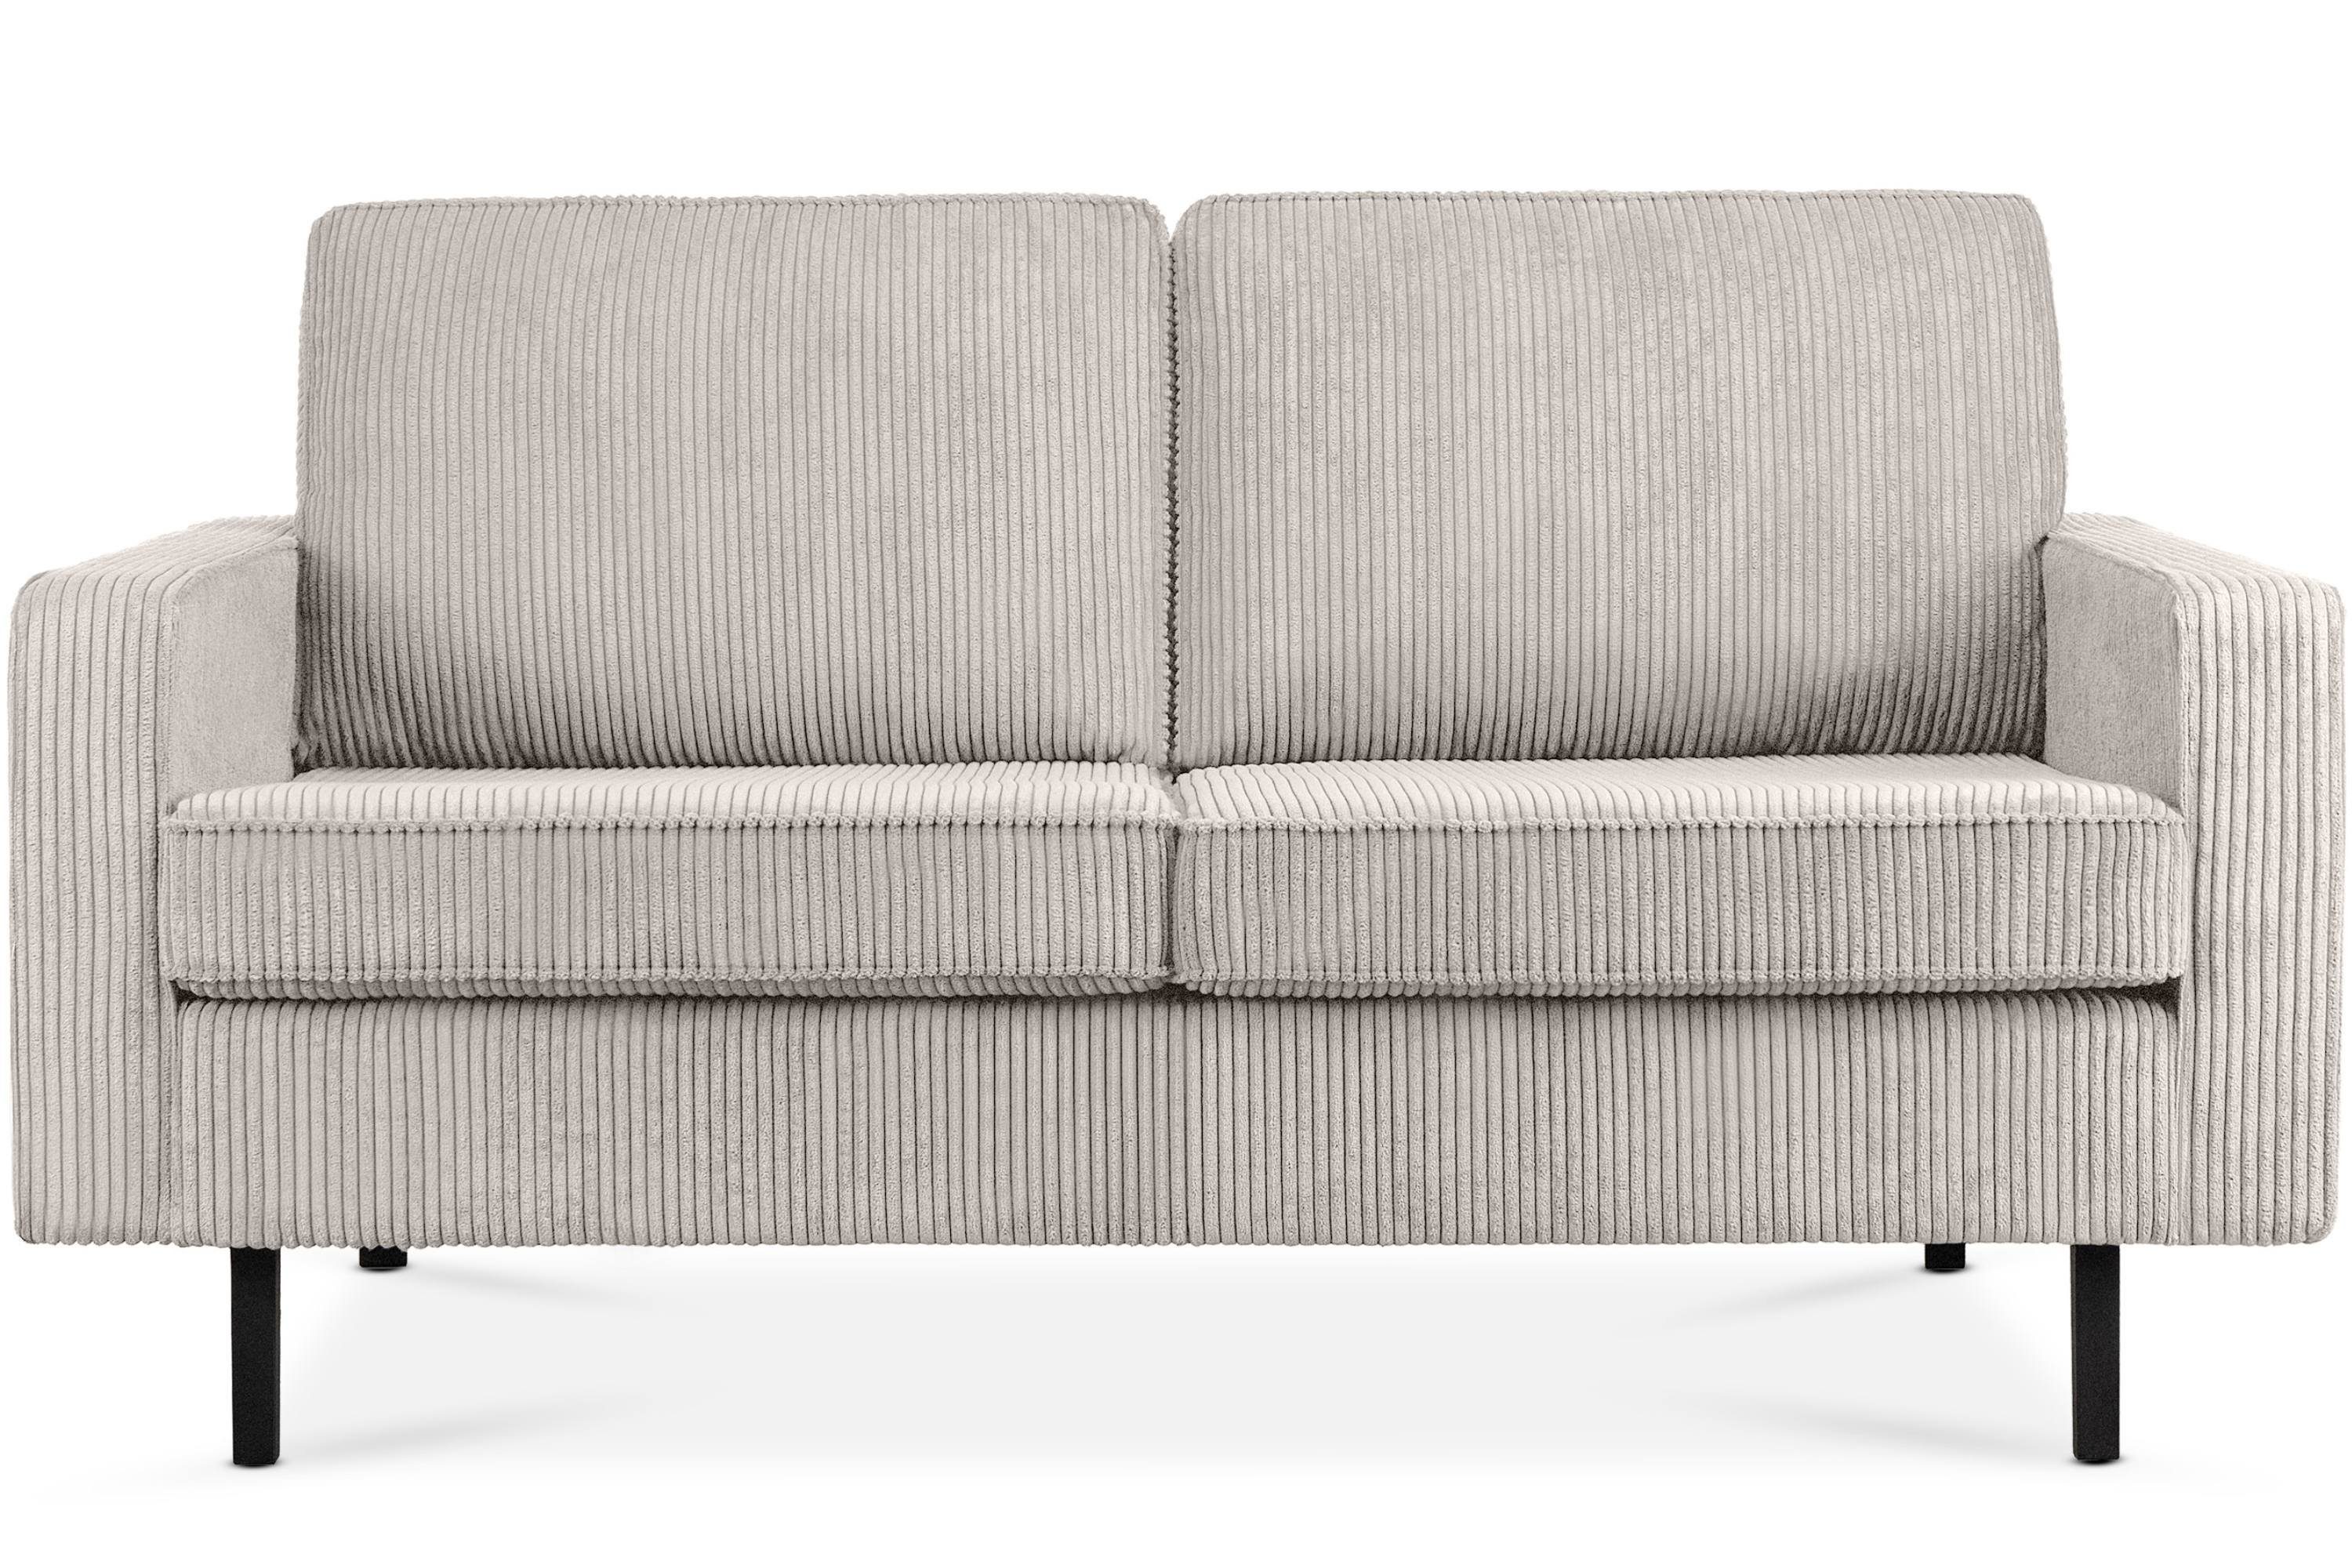 Pet hochwertigem in Konsimo Polsterung Schaumstoff, aus 2-Sitzer Zweisitzer-Sofa, Friendly INVIA Cord-Stoff